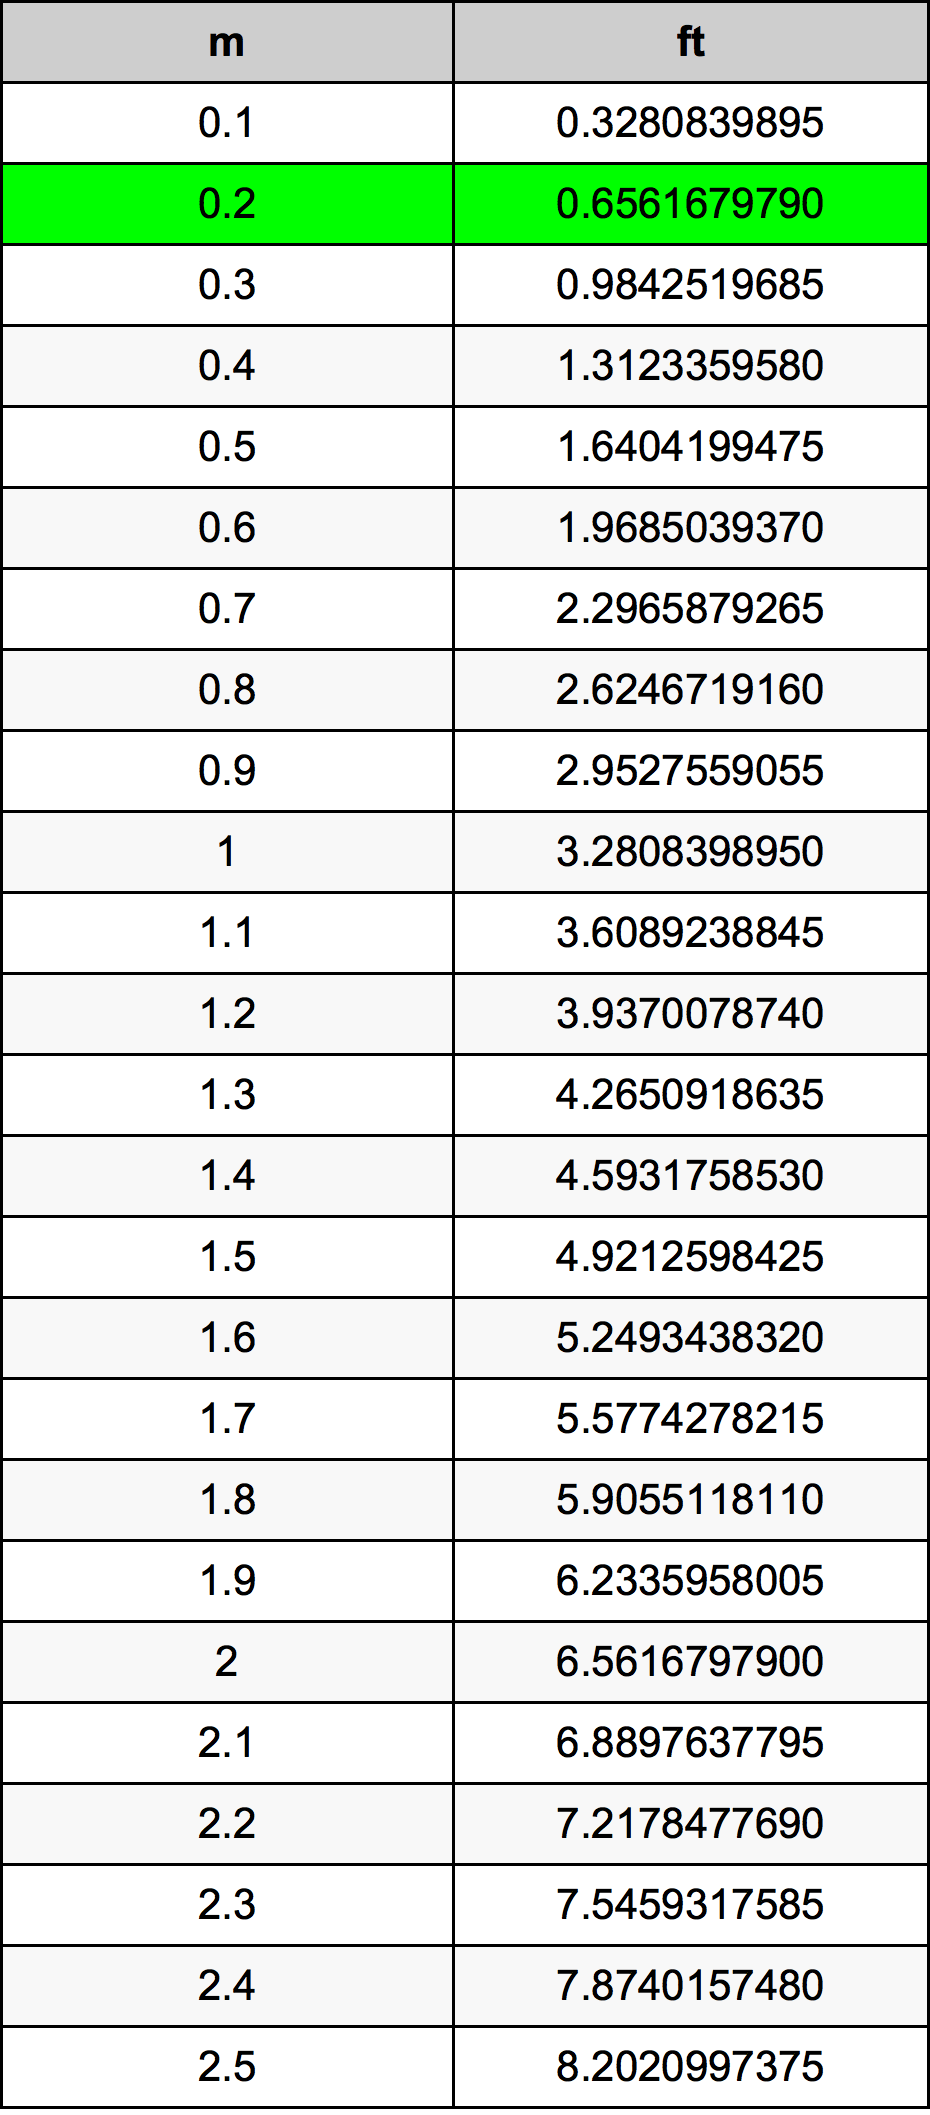 0.2 Metru tabelul de conversie